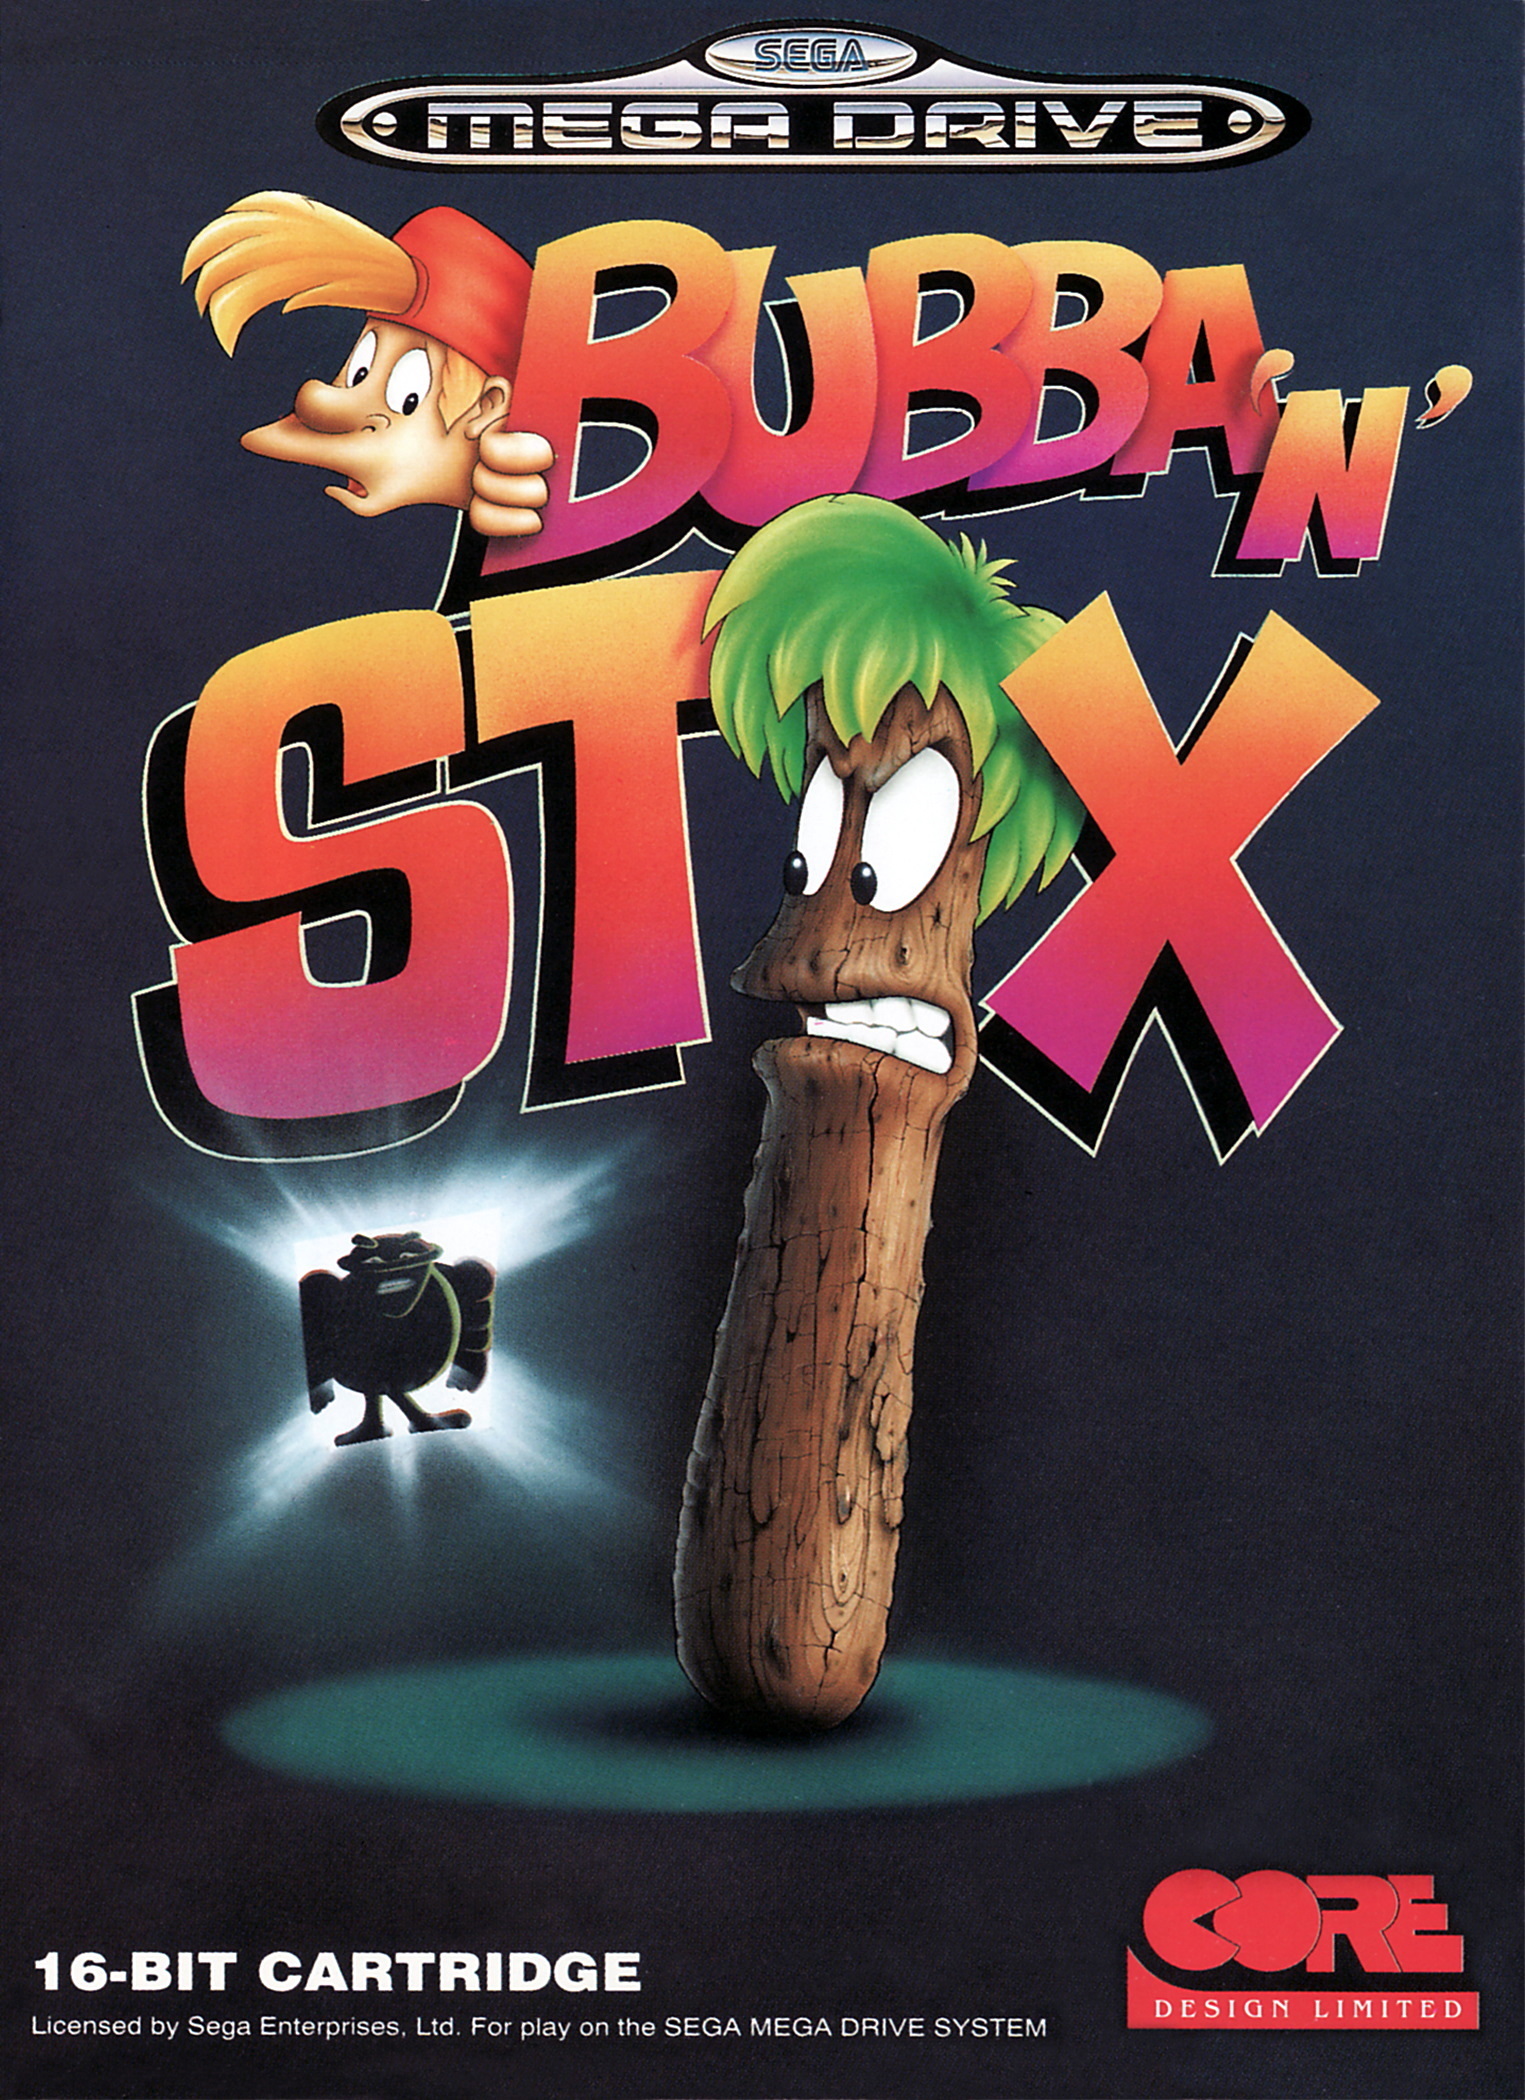 Стик сега. Игра Sega: Bubba'n'Stix. Bubba n Stix Sega игра. Бубба и Стикс. Bubba n Stix картридж сега.